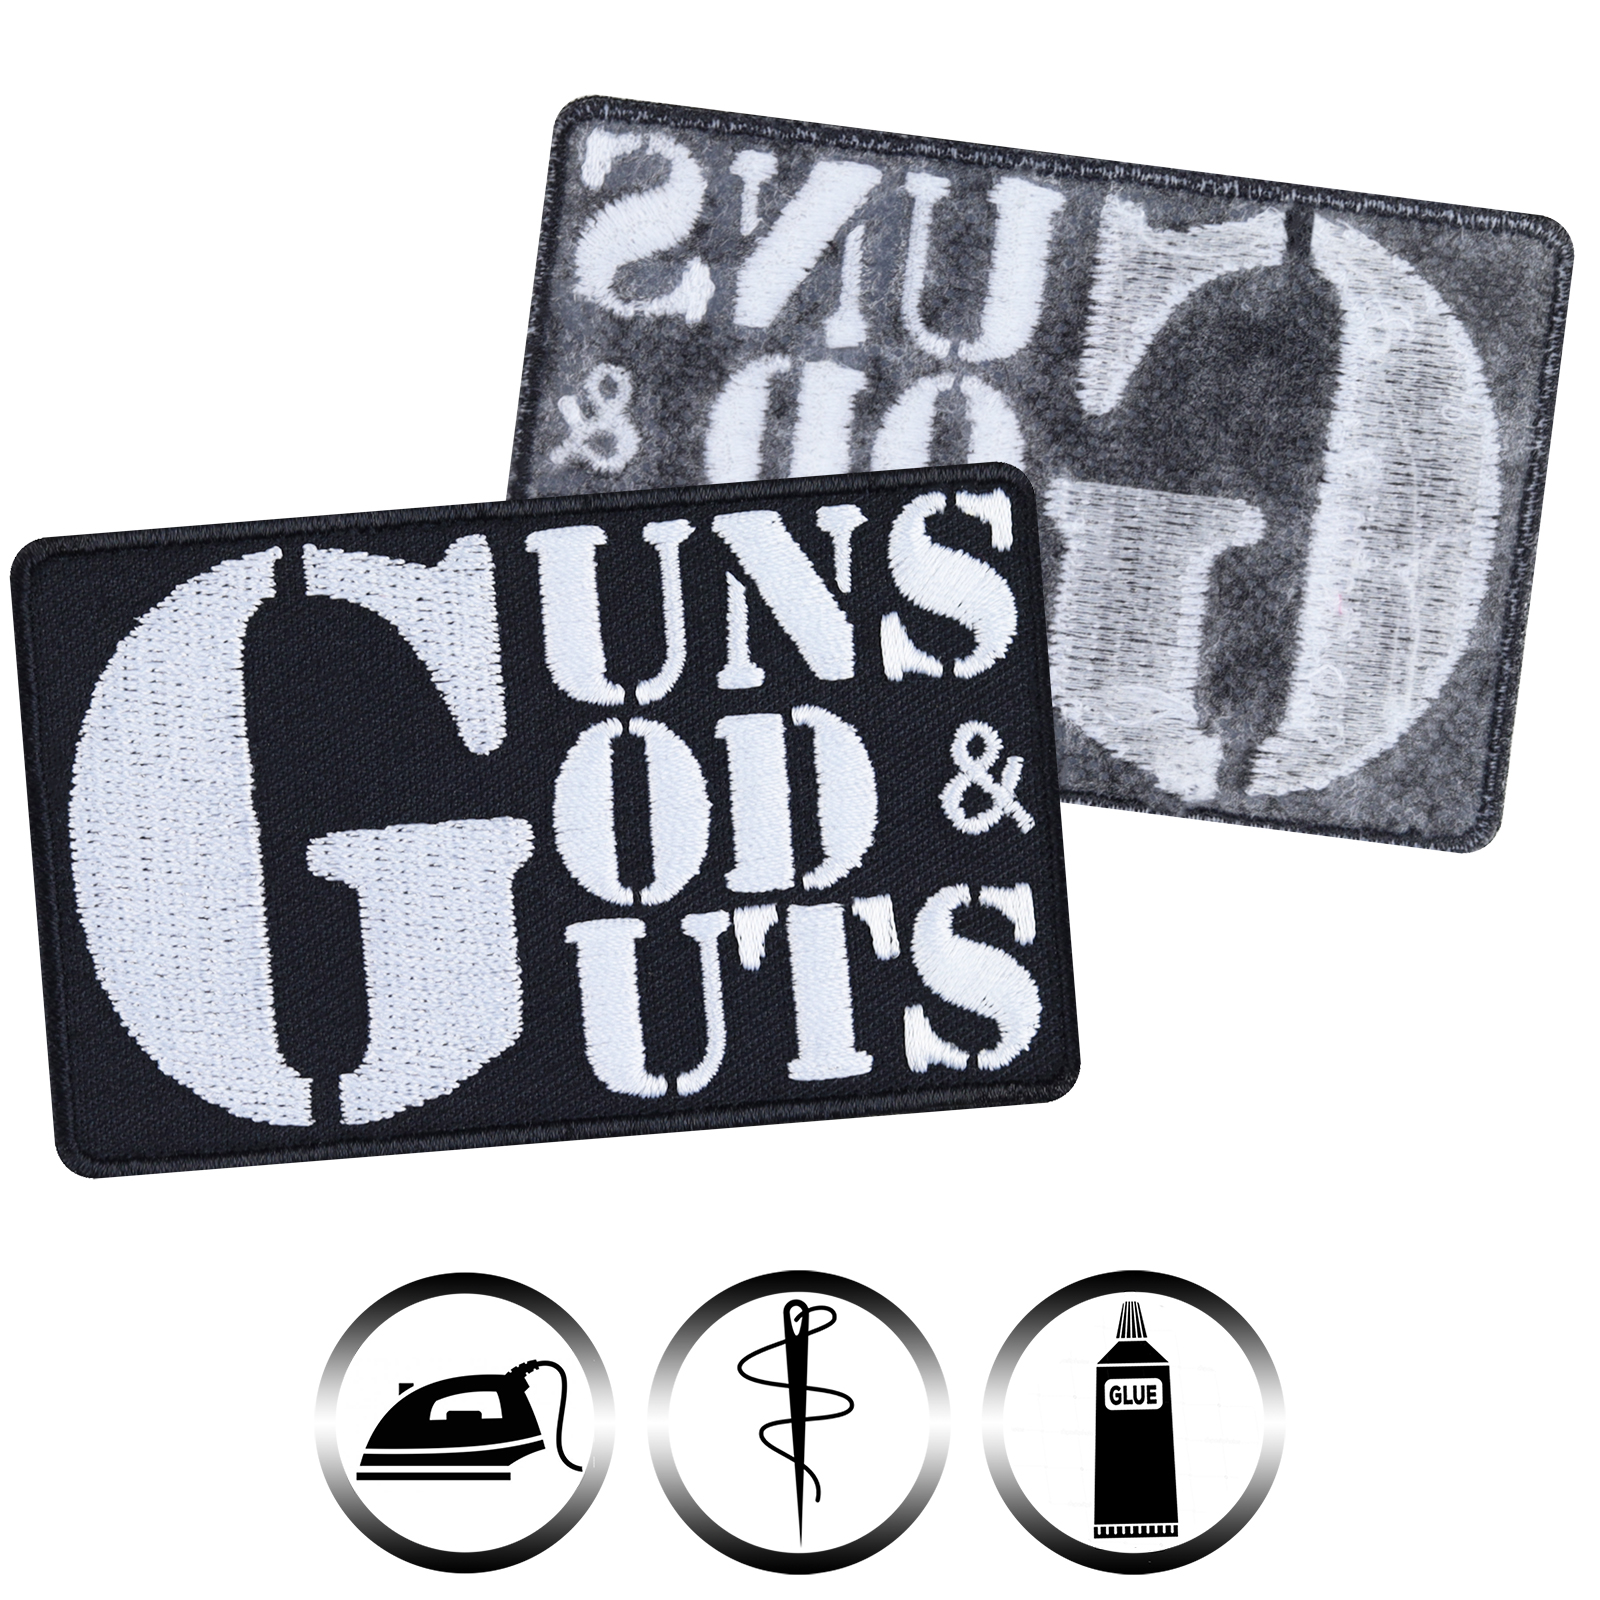 Guns, gods & guts - Patch